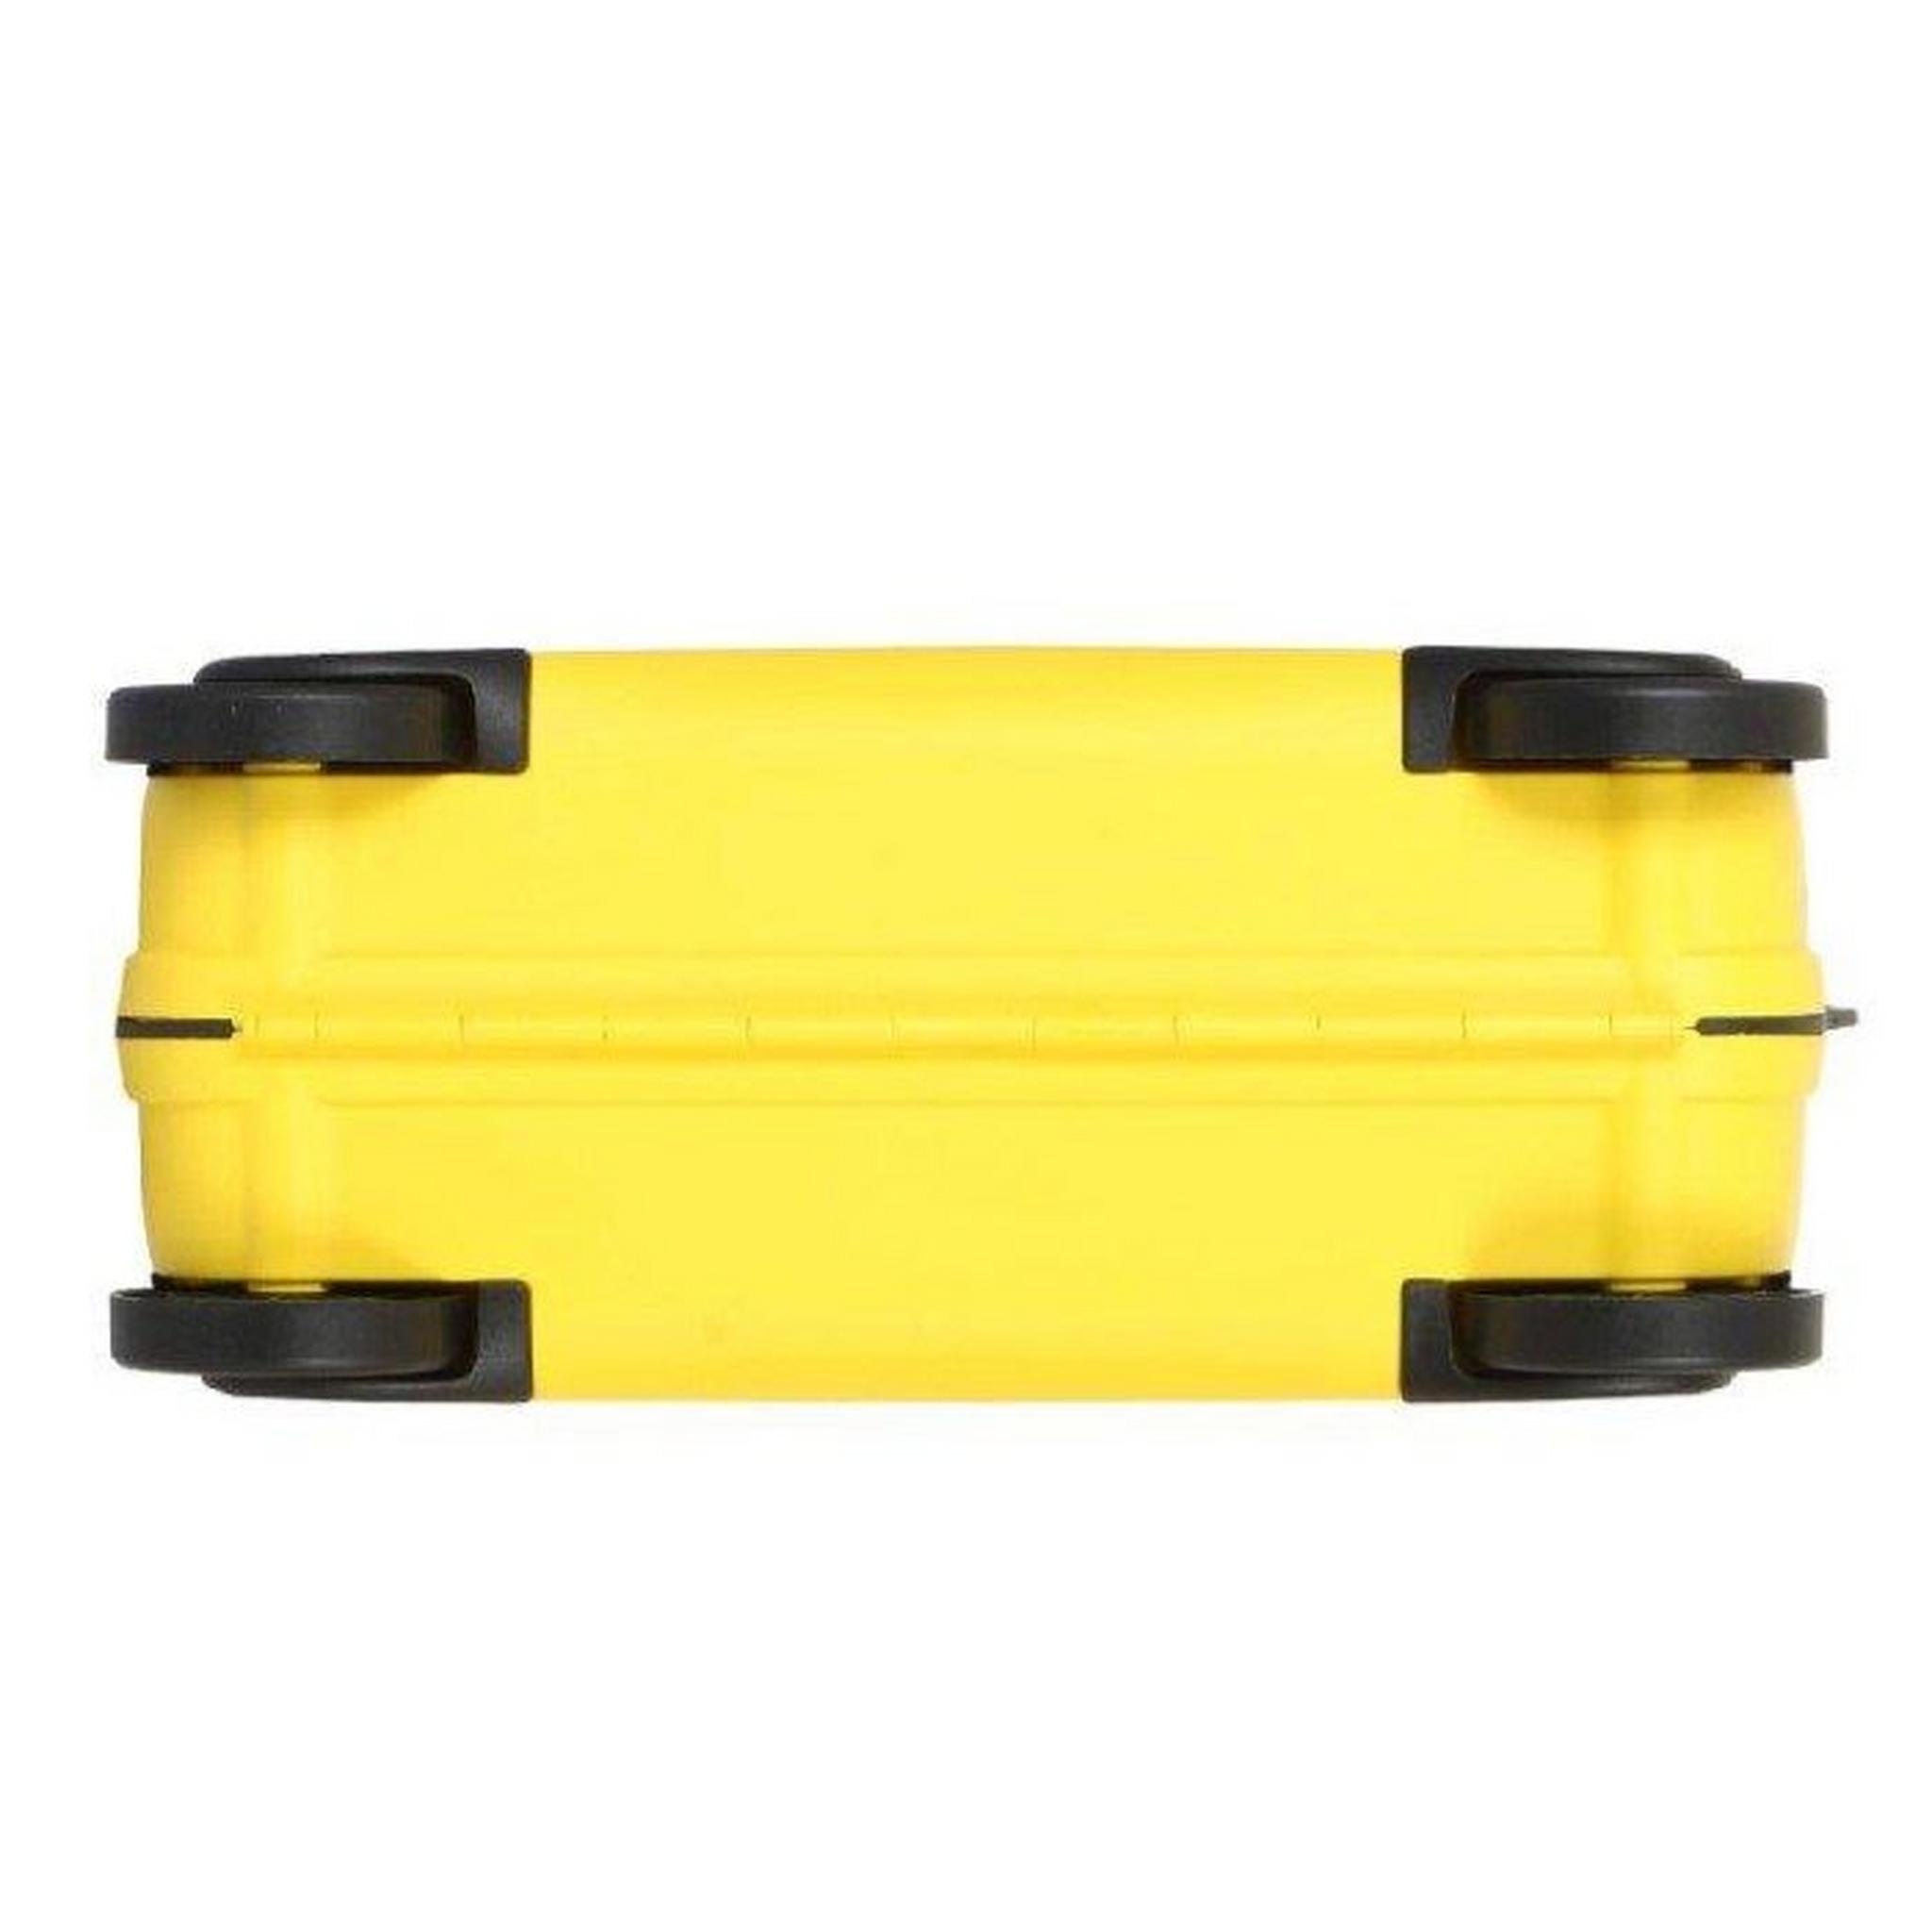 حقيبة سفر اطفال سكيتل من امريكان توريستر، سعة 25 لتر، FH0X06411 – أصفر نمط النحلة